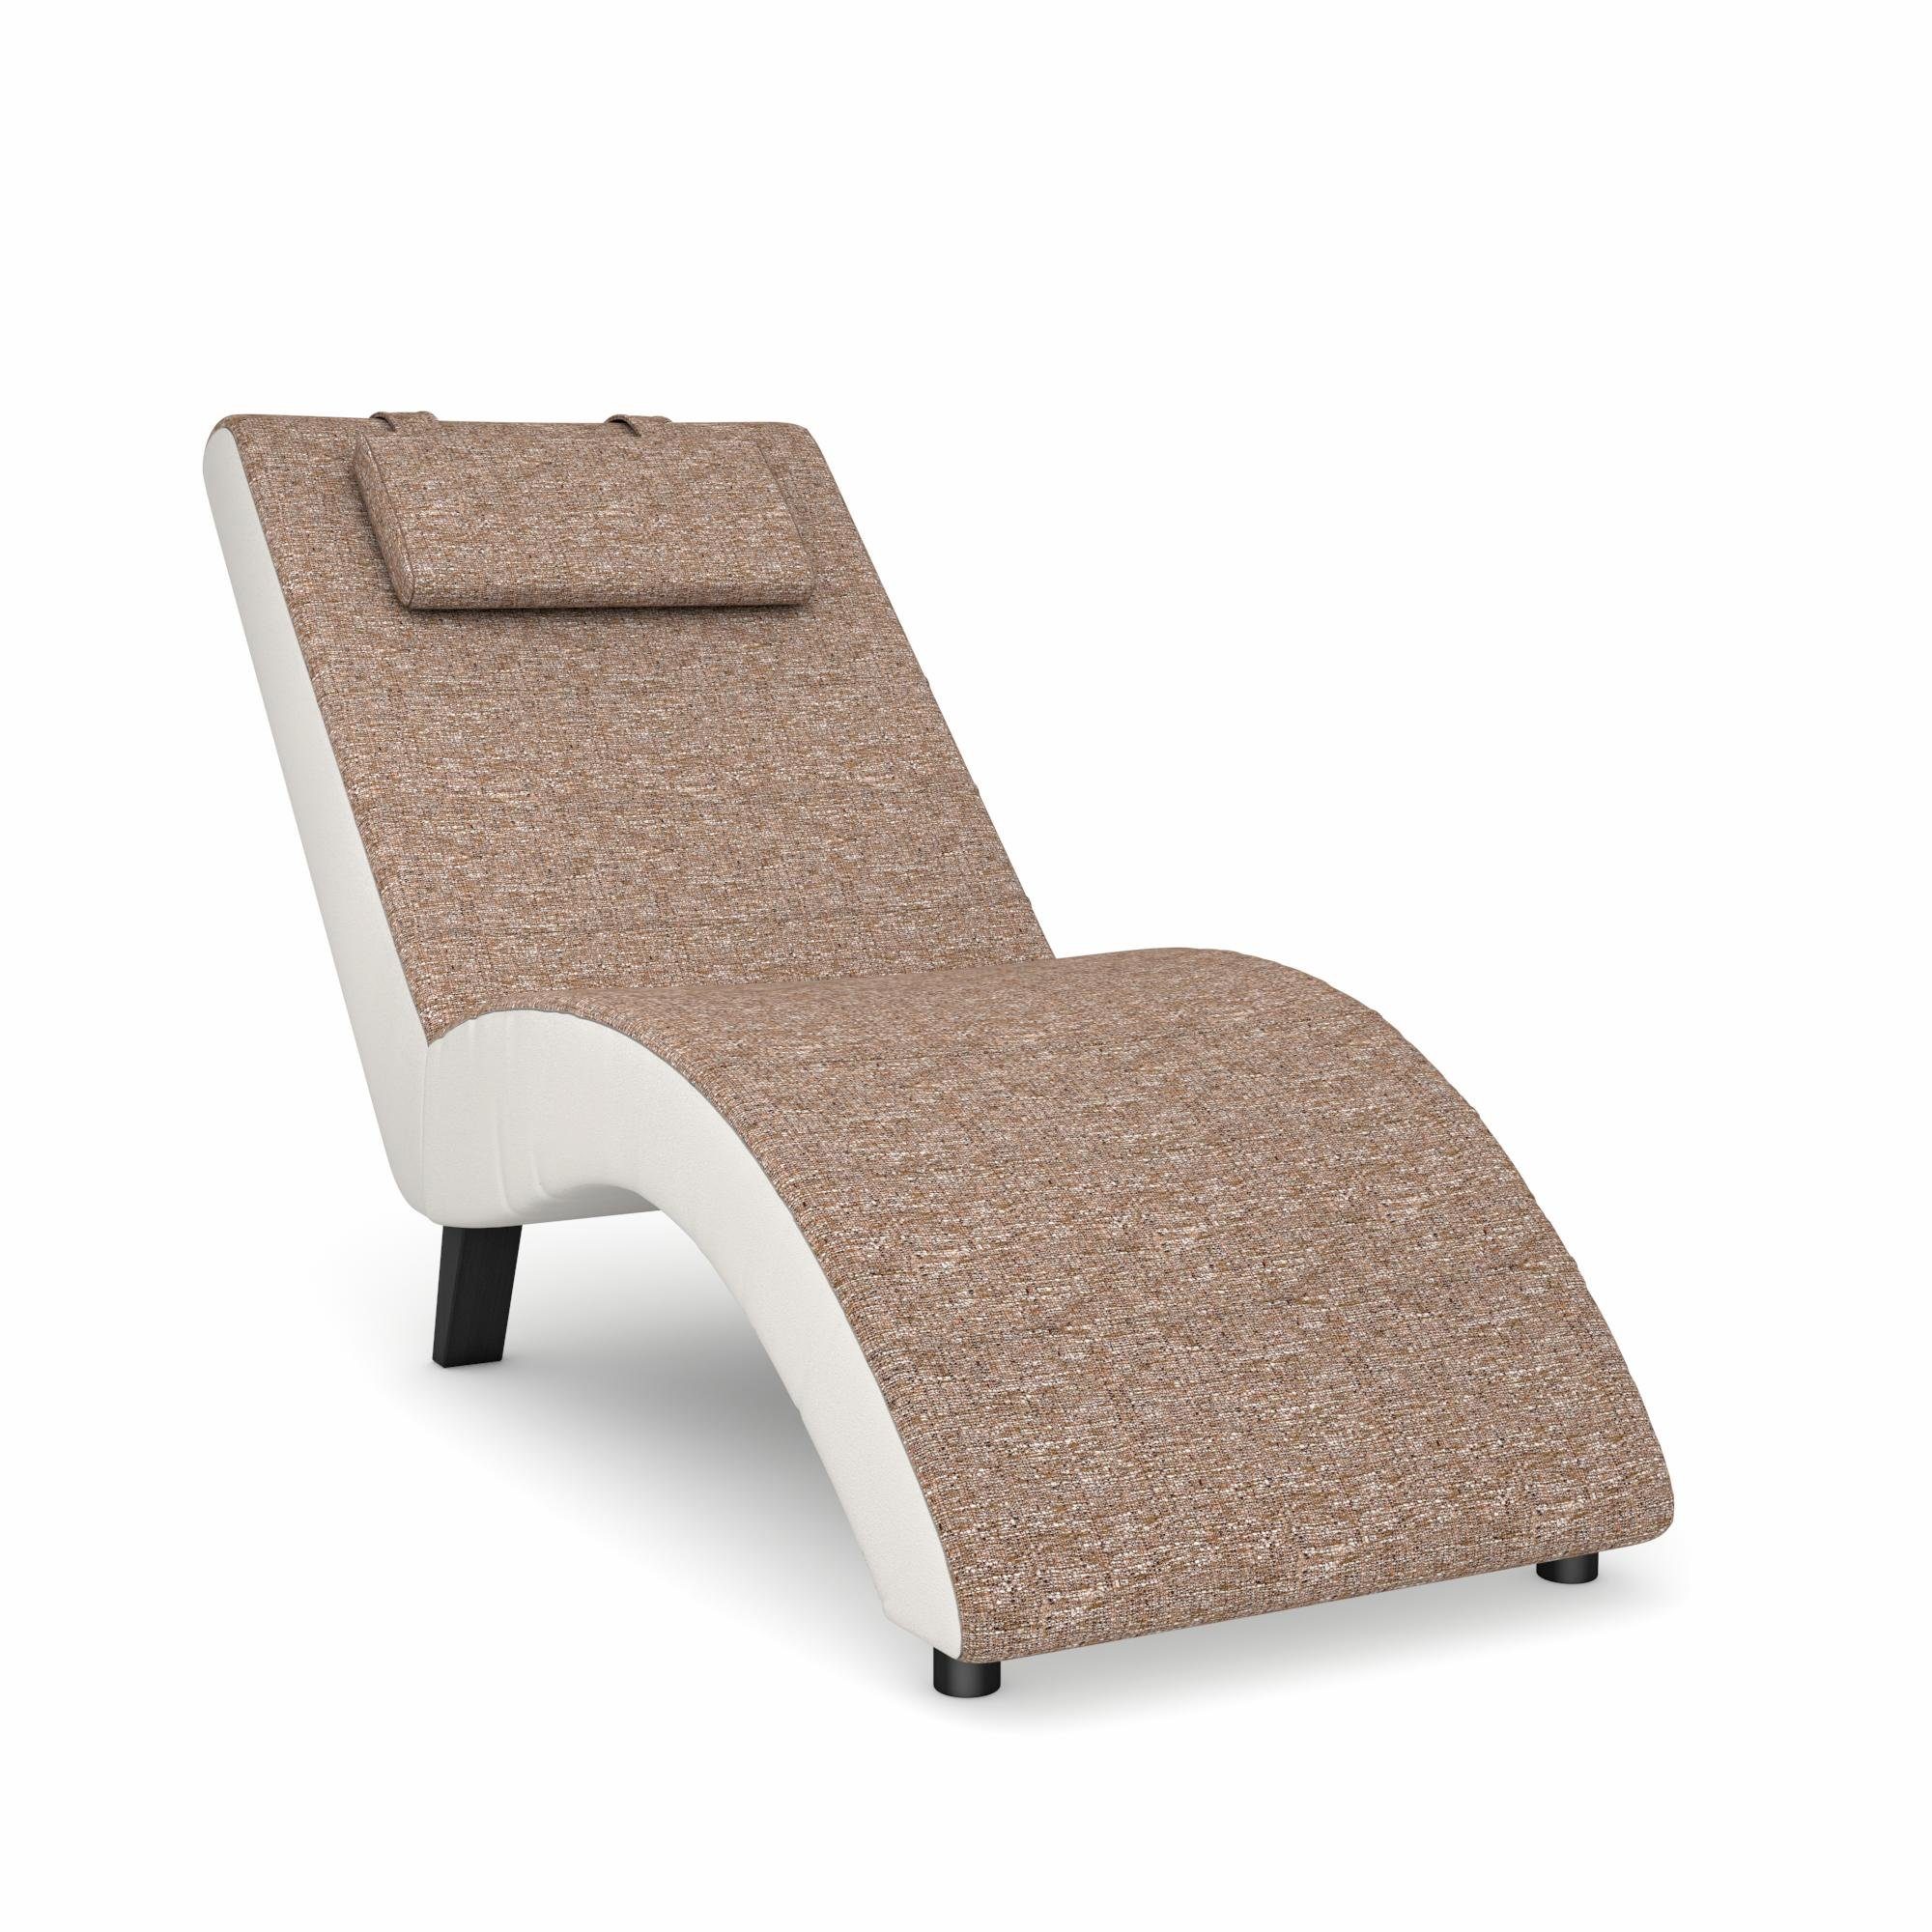 Max Winzer® Stretcher Build-a-chair Nova inclusief nekkussen, om zelf te ontwerpen